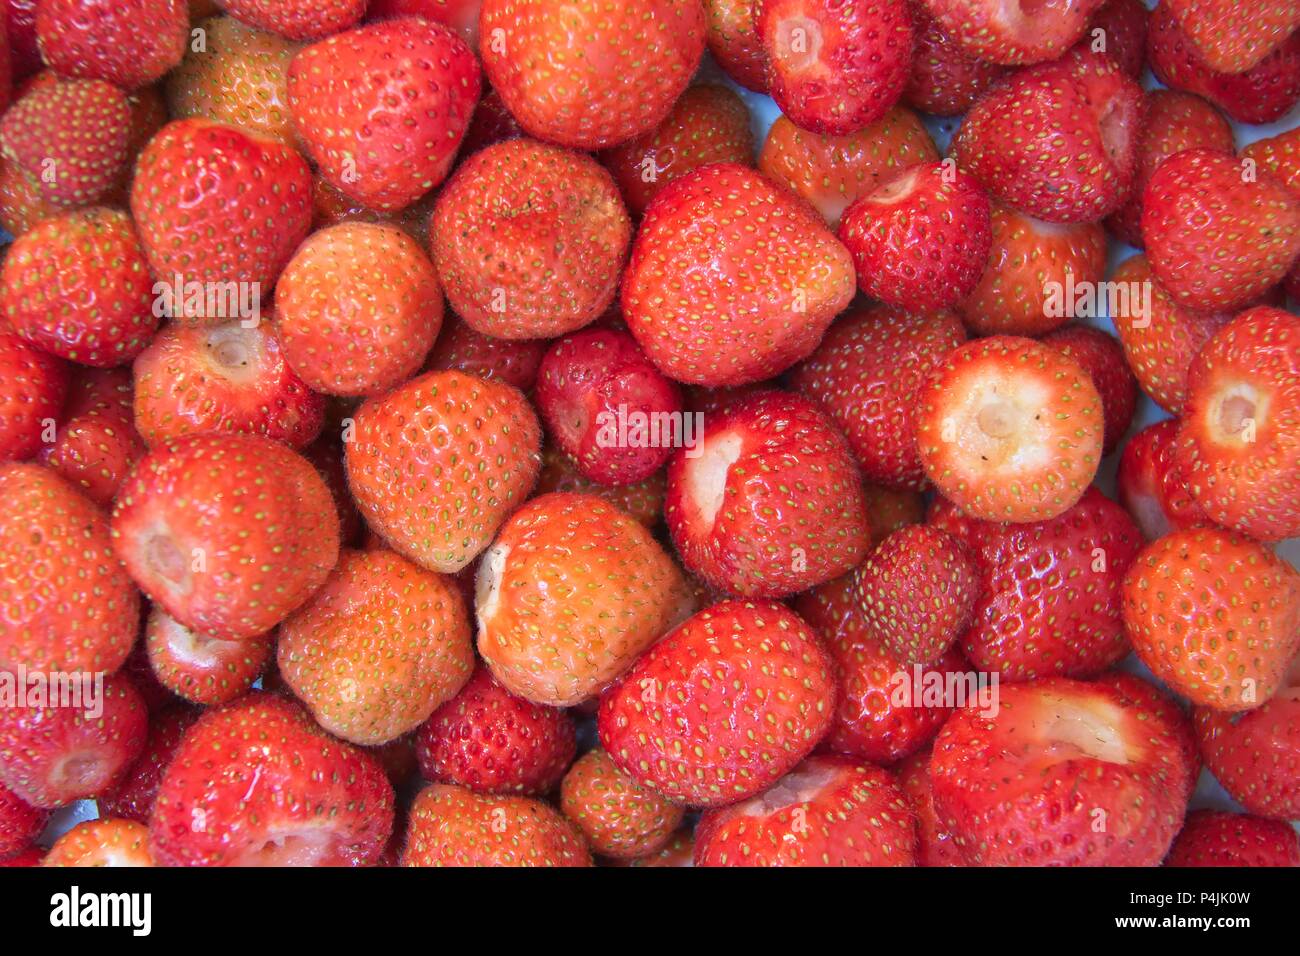 Appena raccolte le fragole in inglese senza peduncolo. Foto Stock